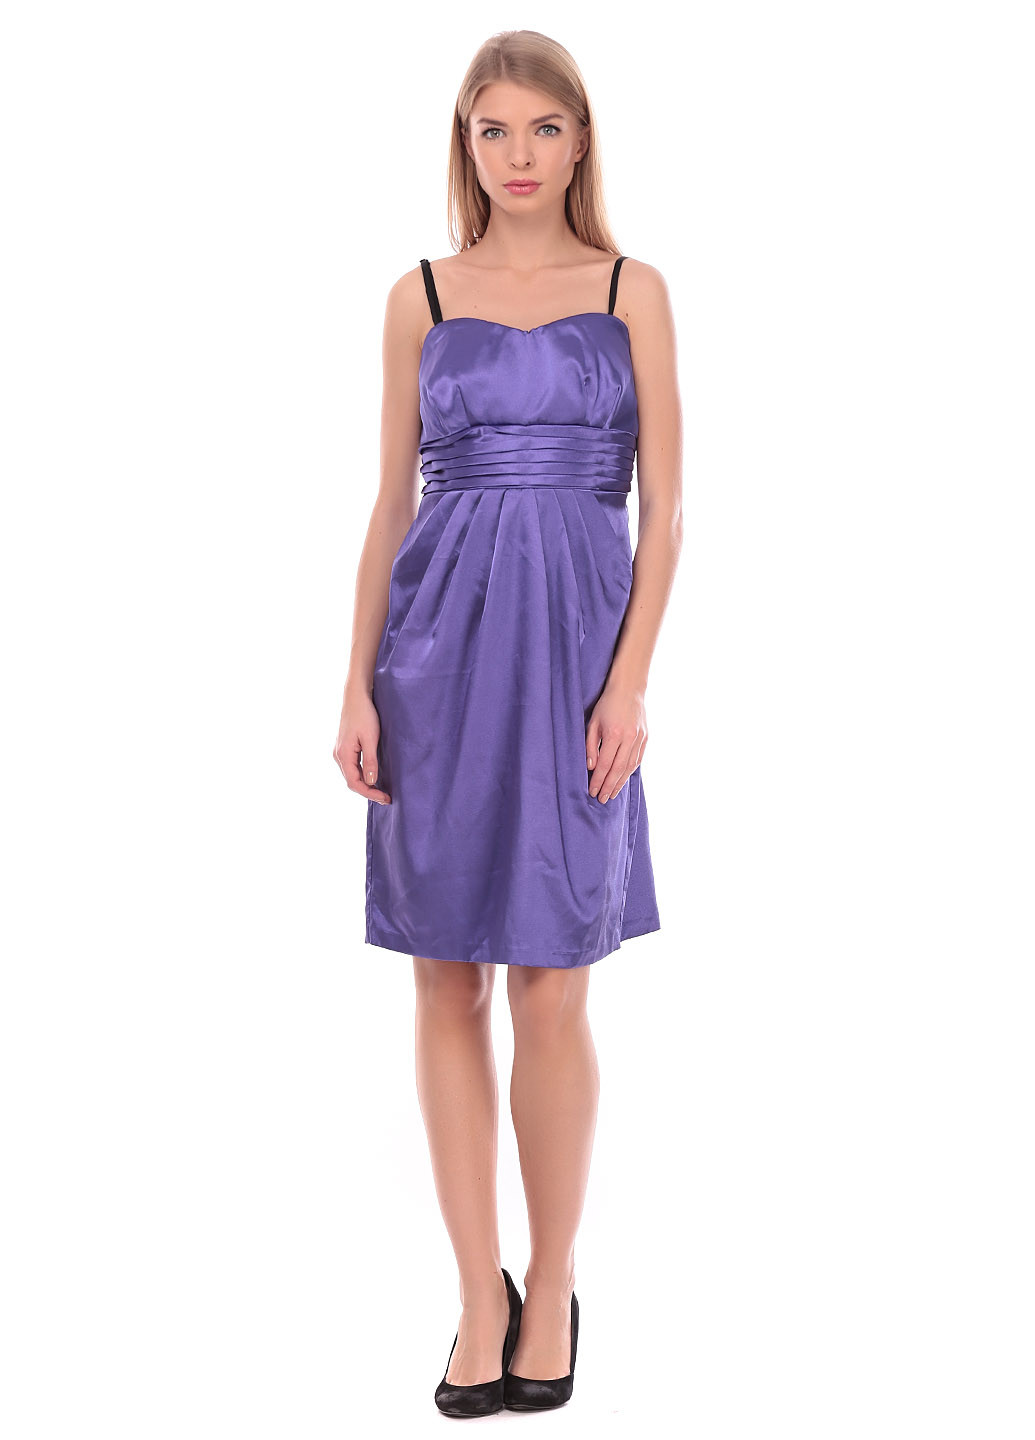 Фиолетовое вечернее платье Laura Scott однотонное